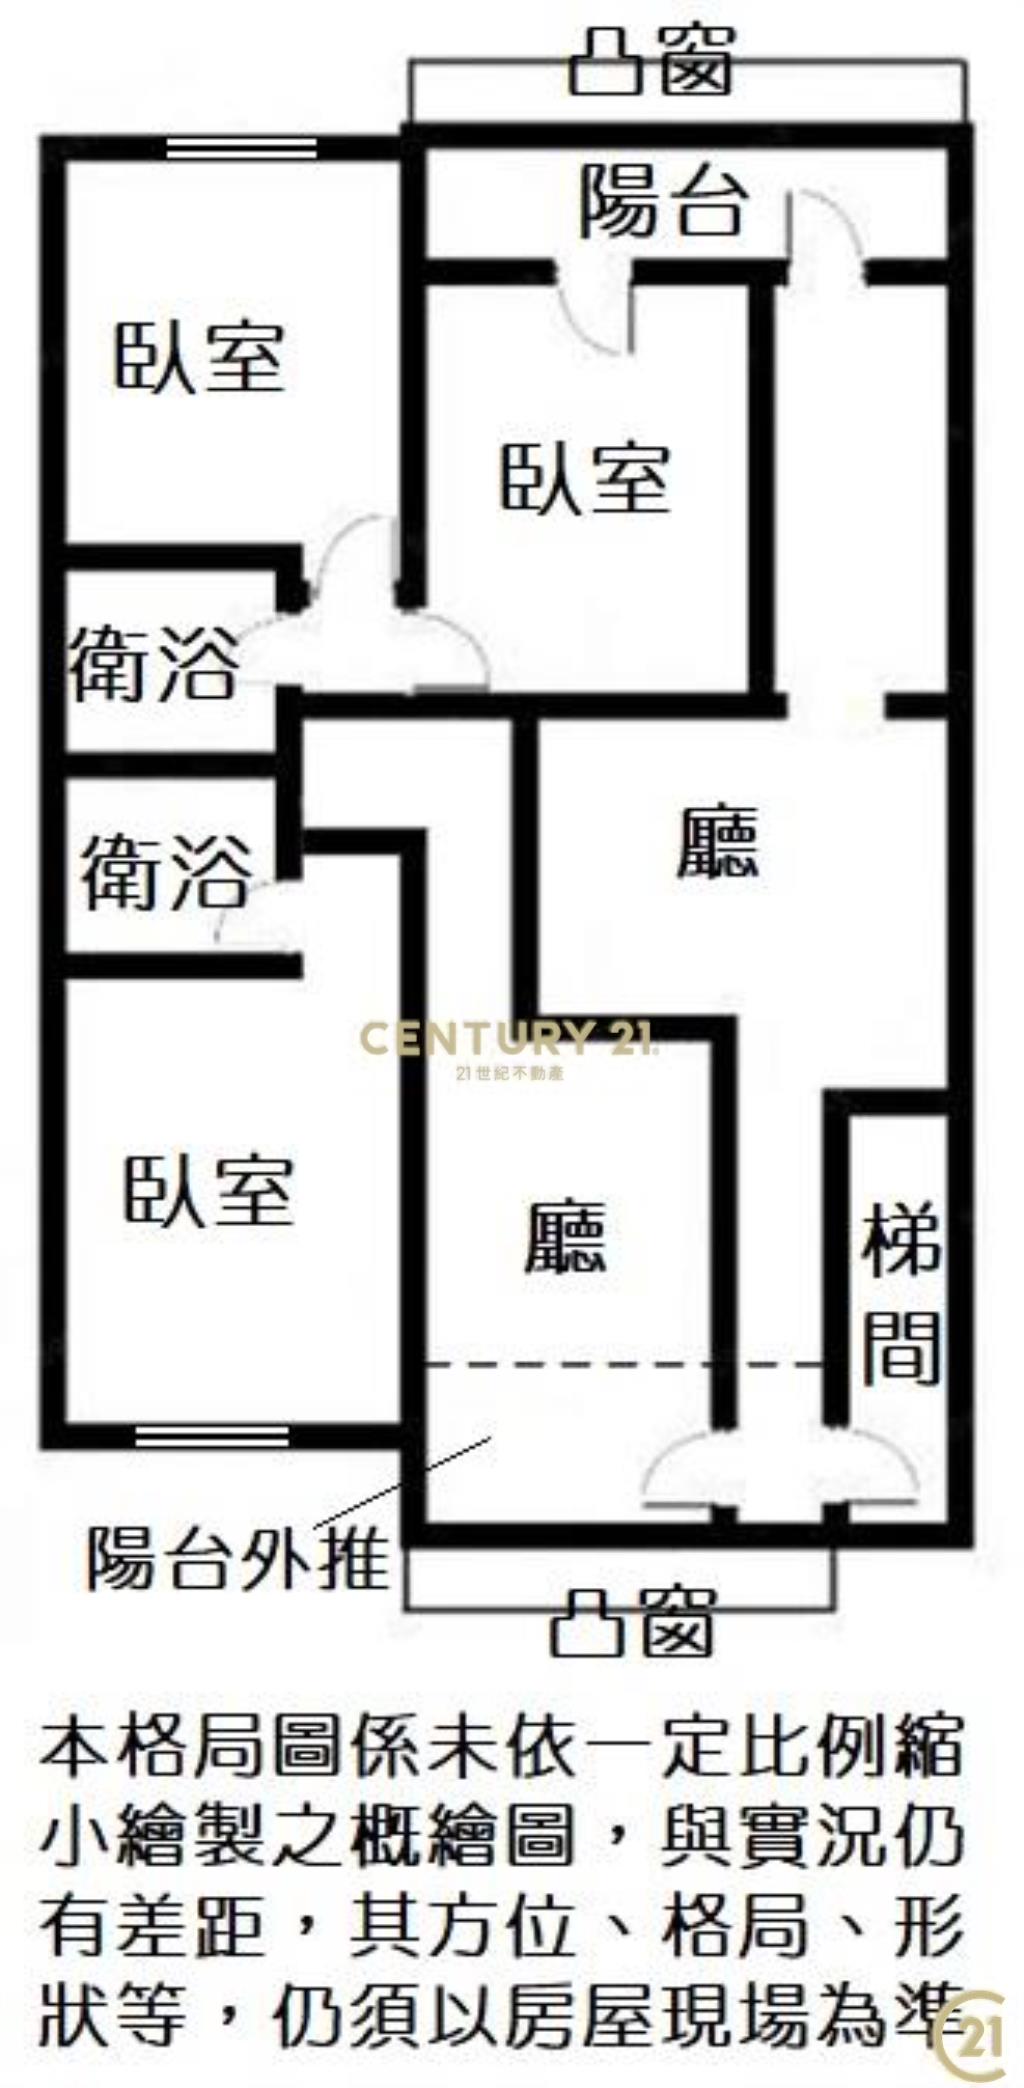 (081)台北橋捷運低樓層三房